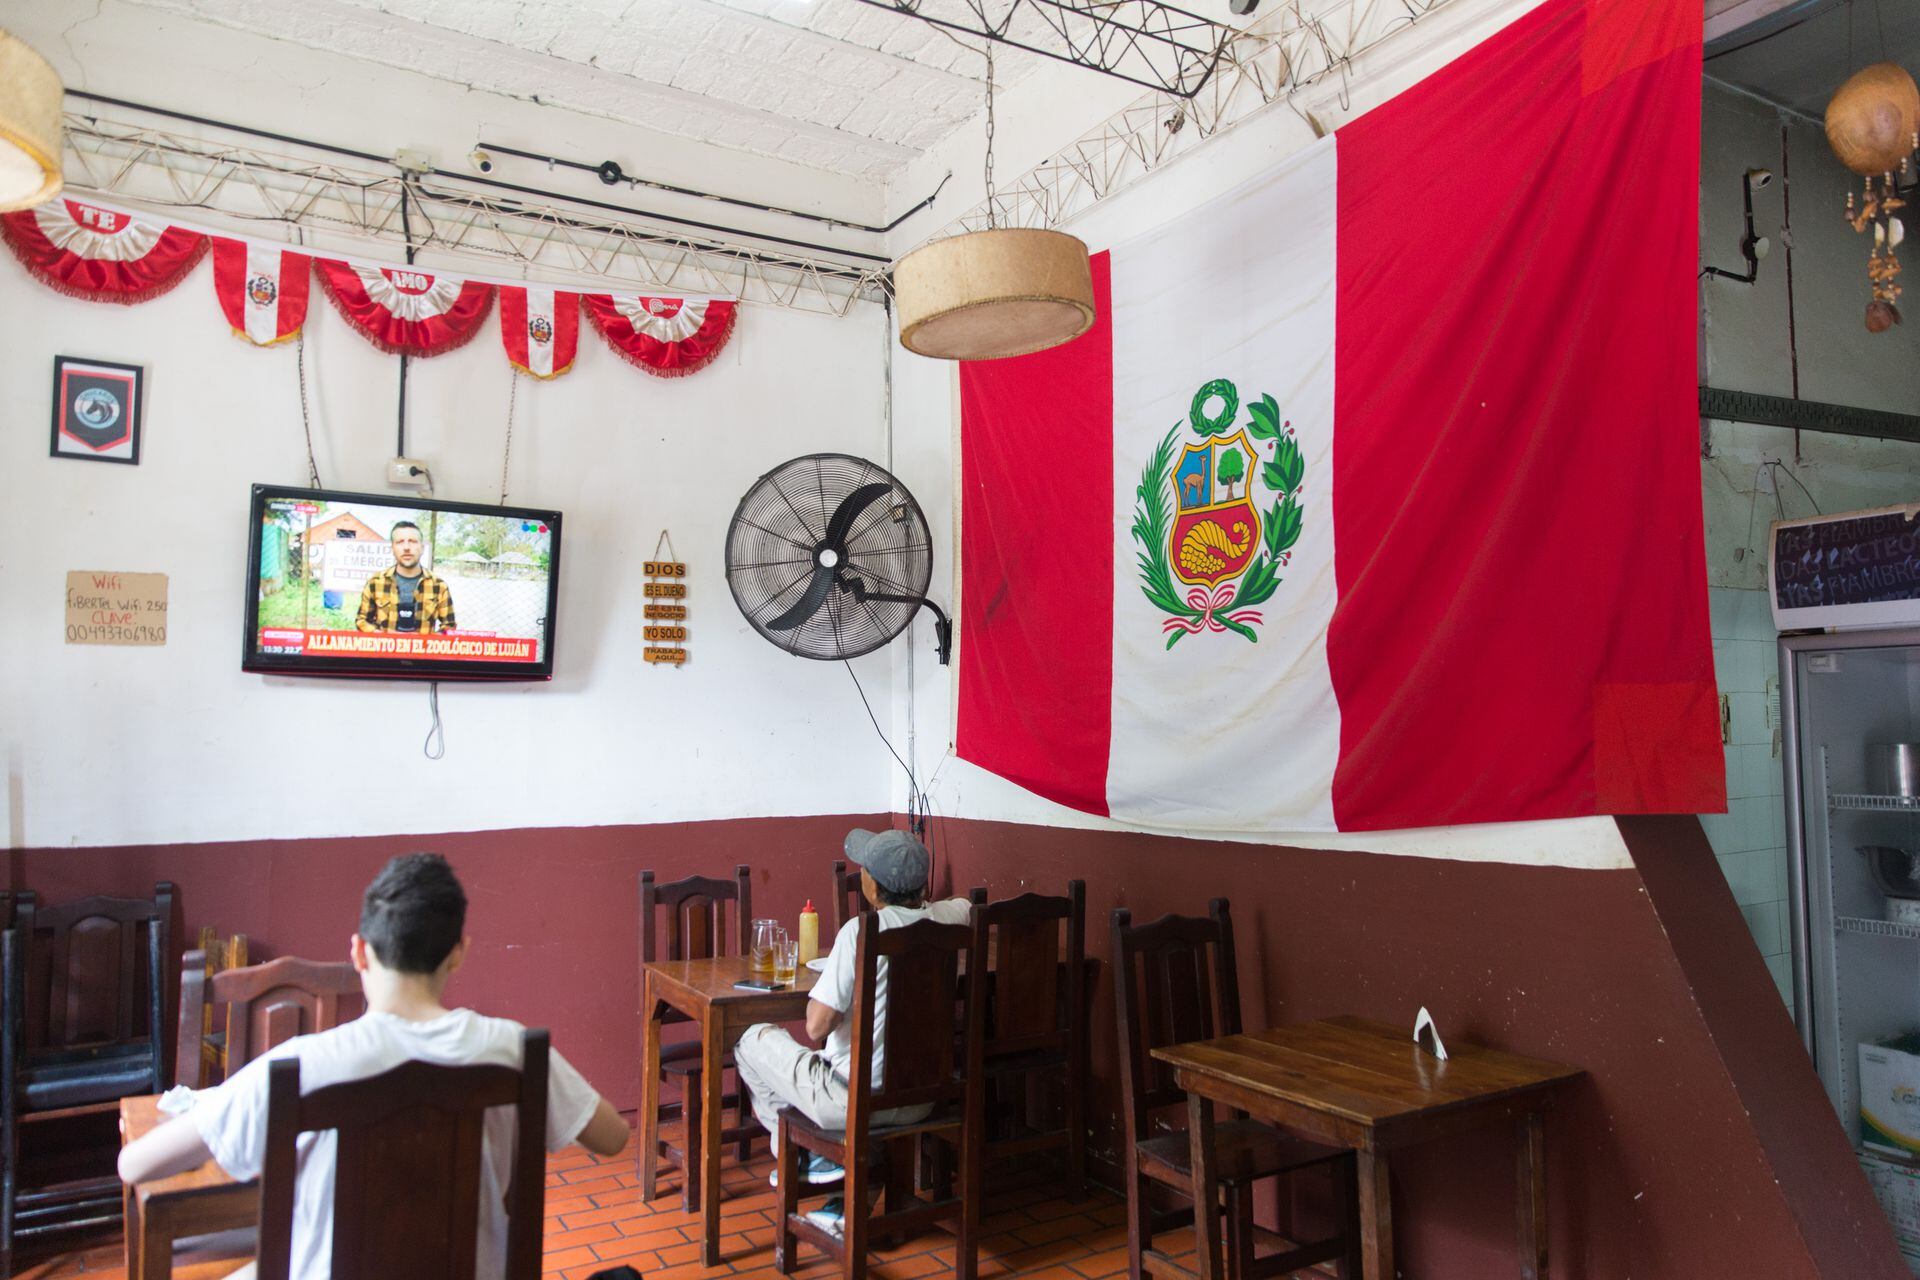 La bandera peruana cuelga de una de las paredes del salón, con la tele prendida.